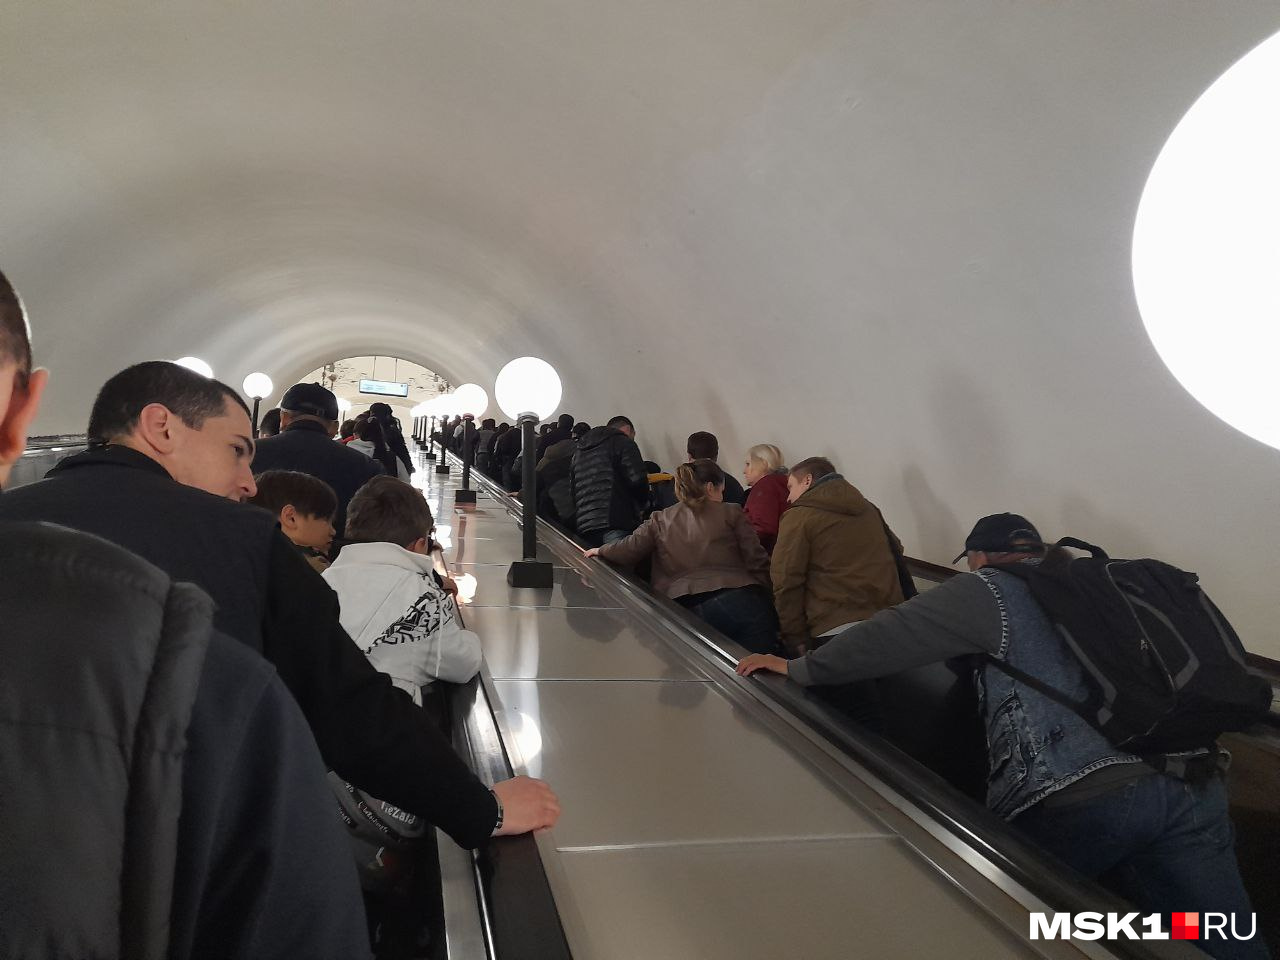 Станция метро «Арбатская» — похоже, все стремятся на парад